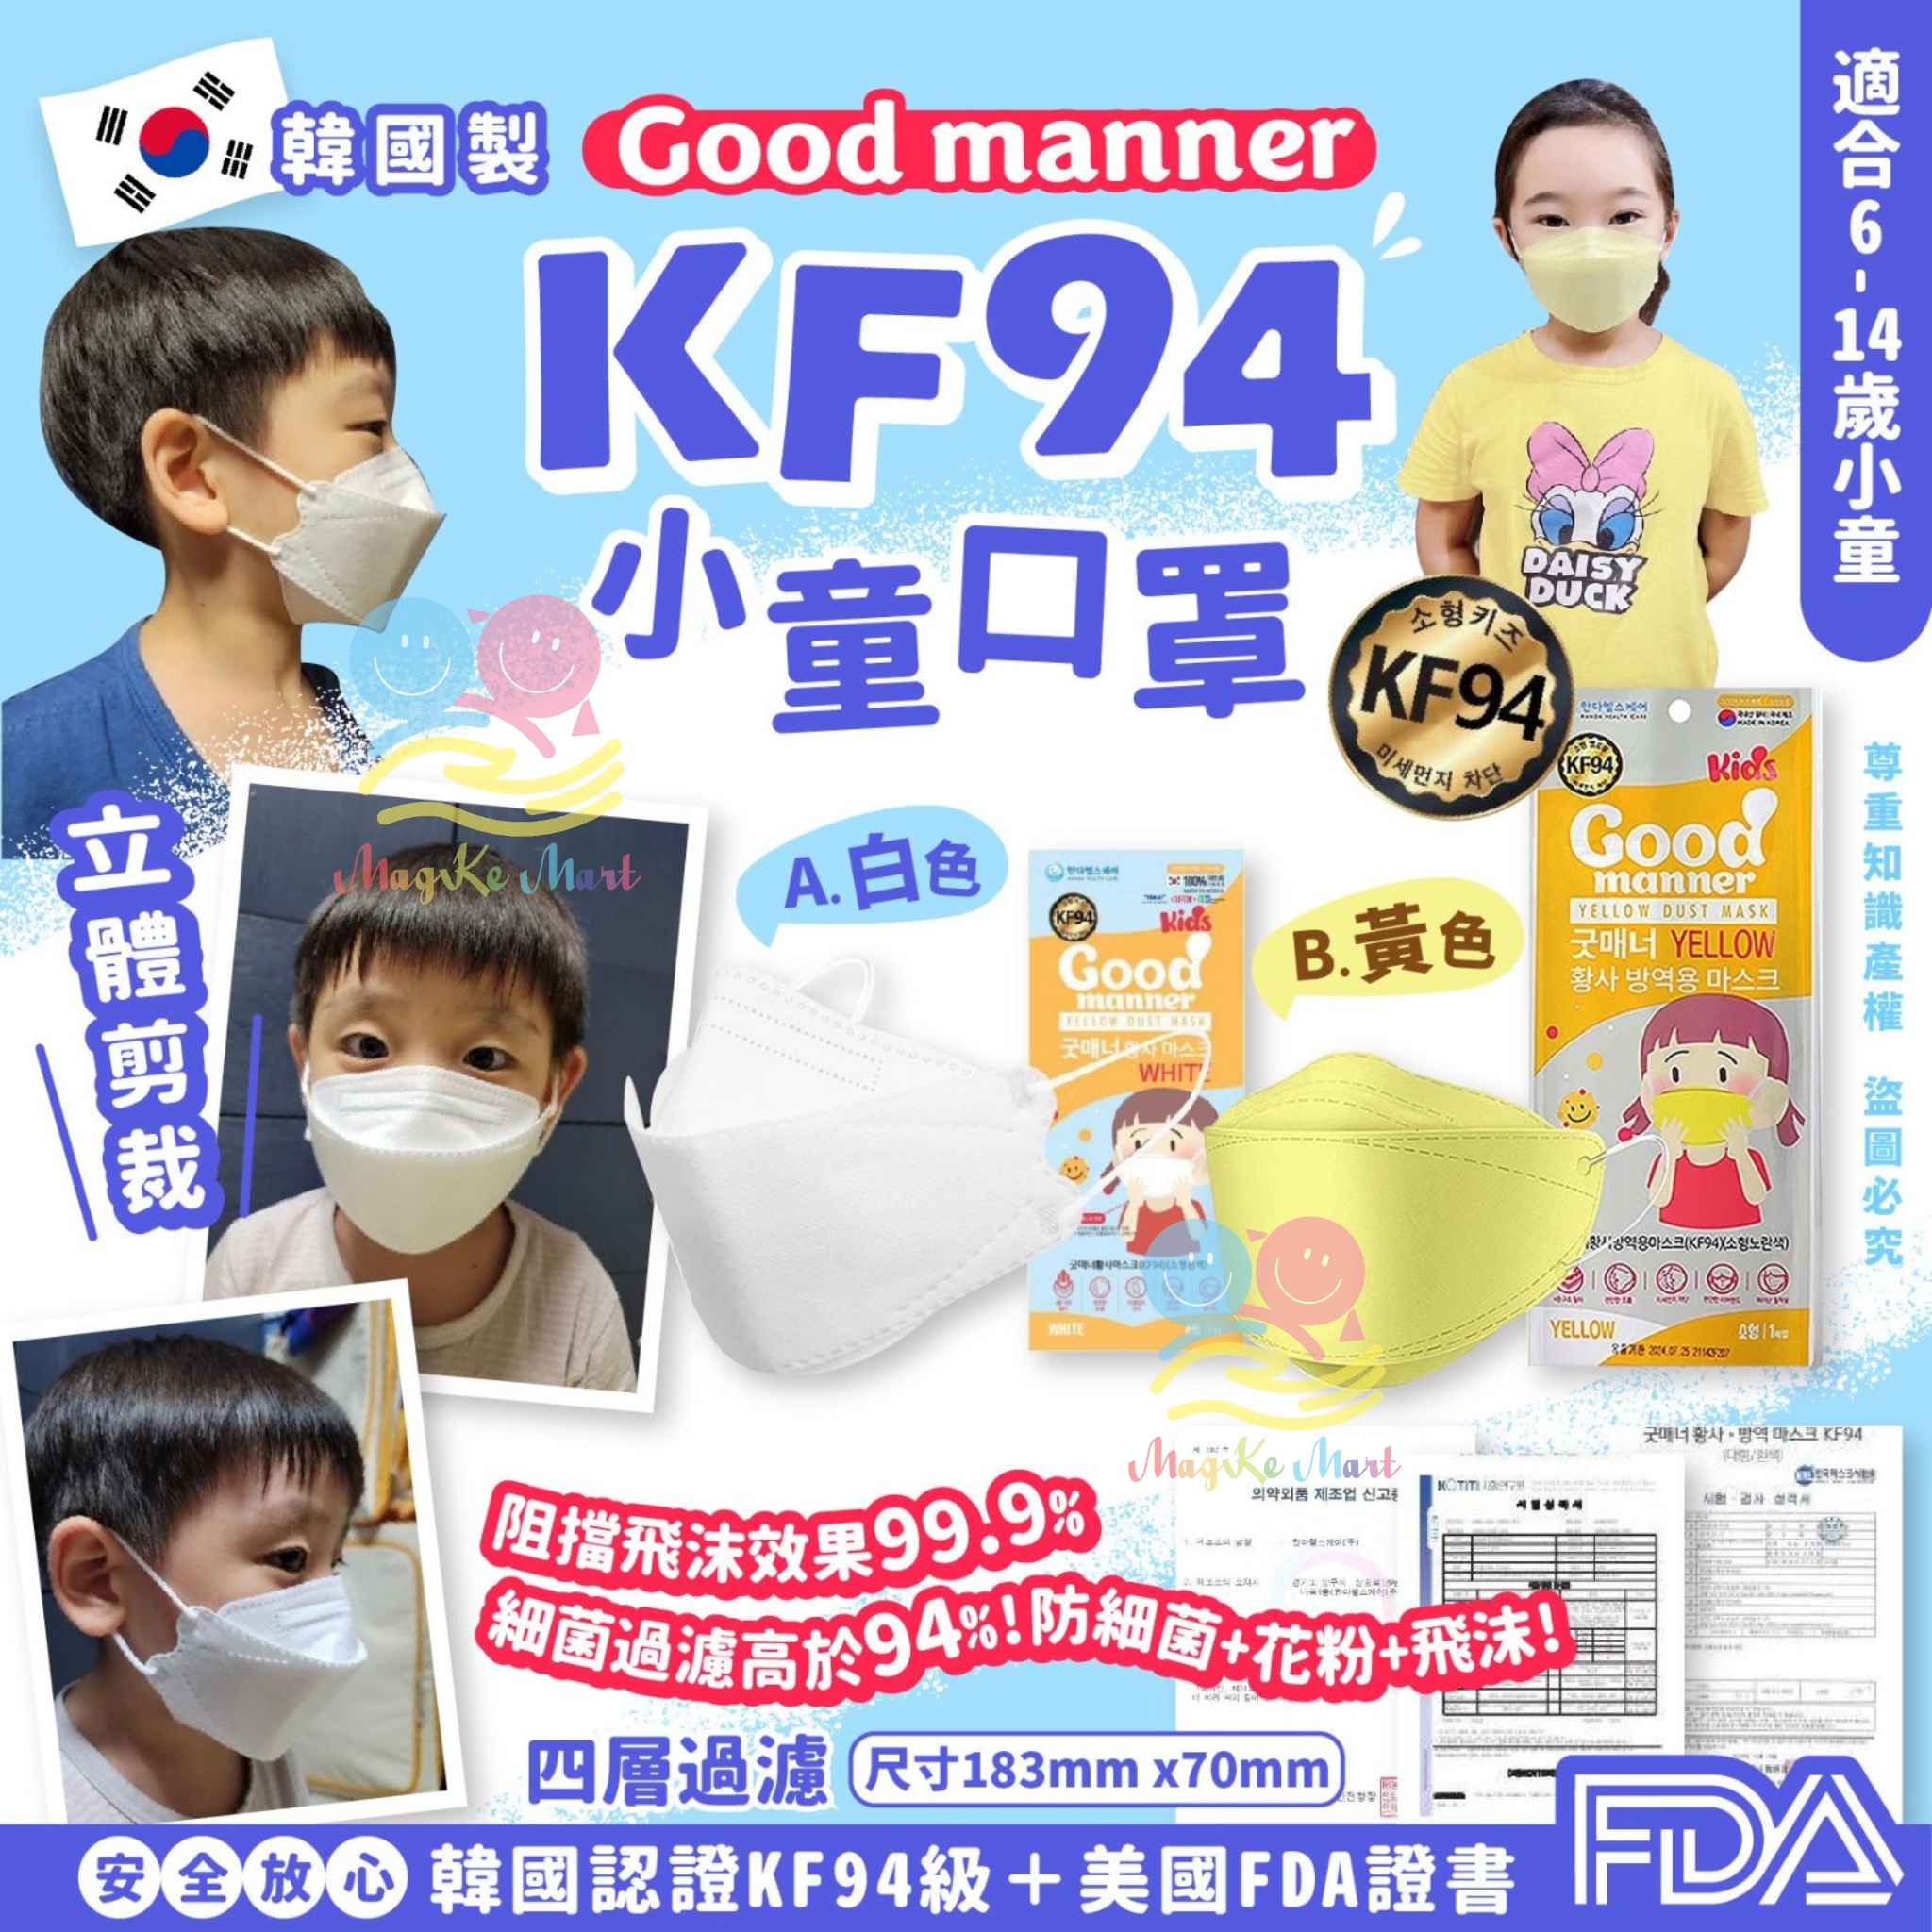 韓國 Good manner KF94小童口罩(1盒50個)(獨立包裝) (B) 黃色